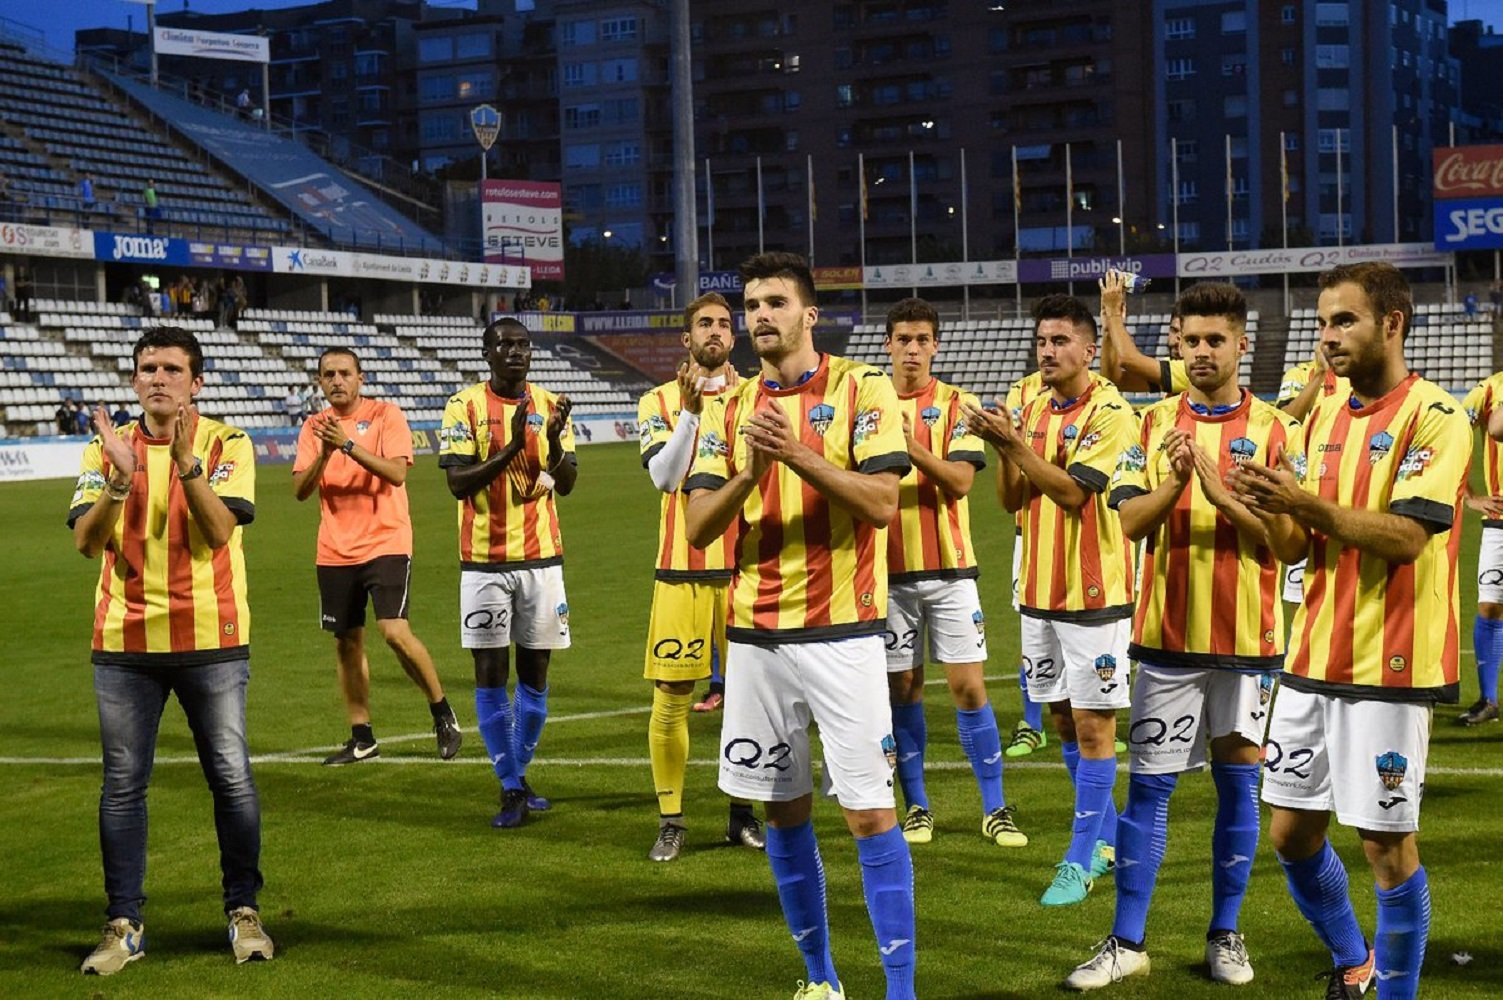 La Federació Espanyola prohibeix al Lleida jugar amb la samarreta de la senyera